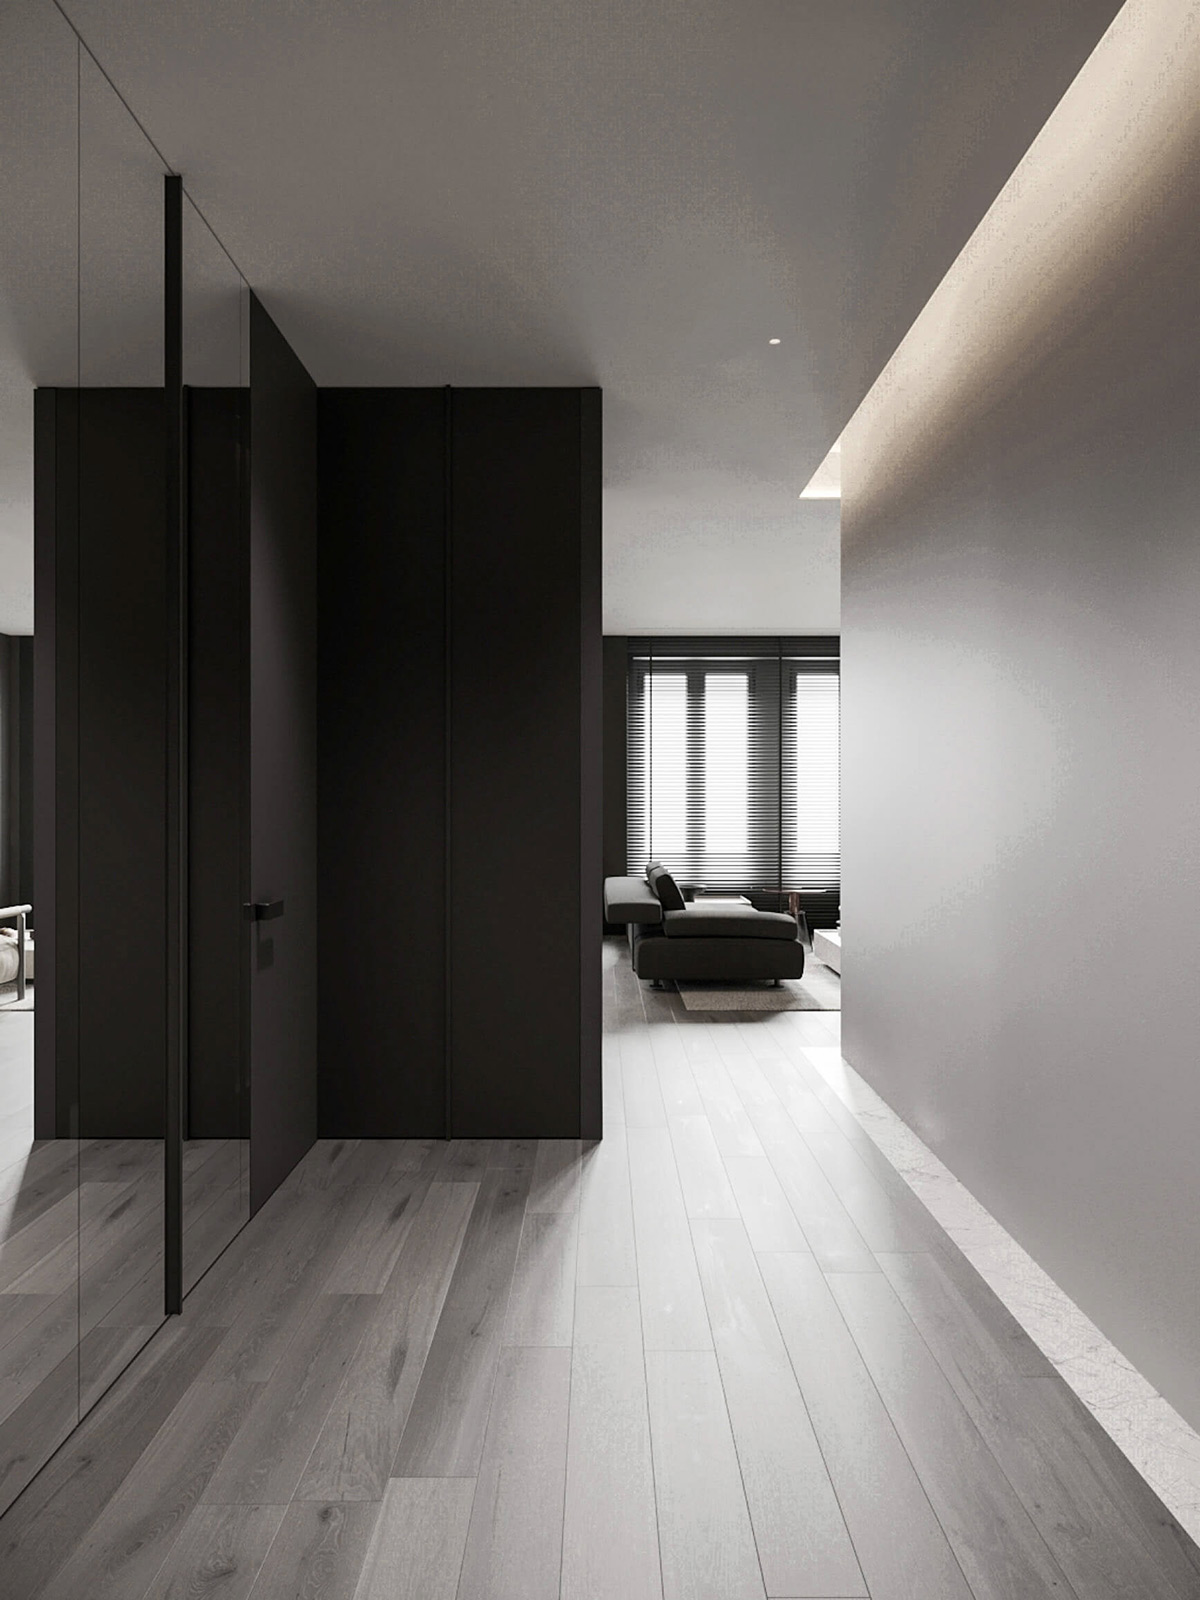 sophisticated gray scale monochromatic interior design 28